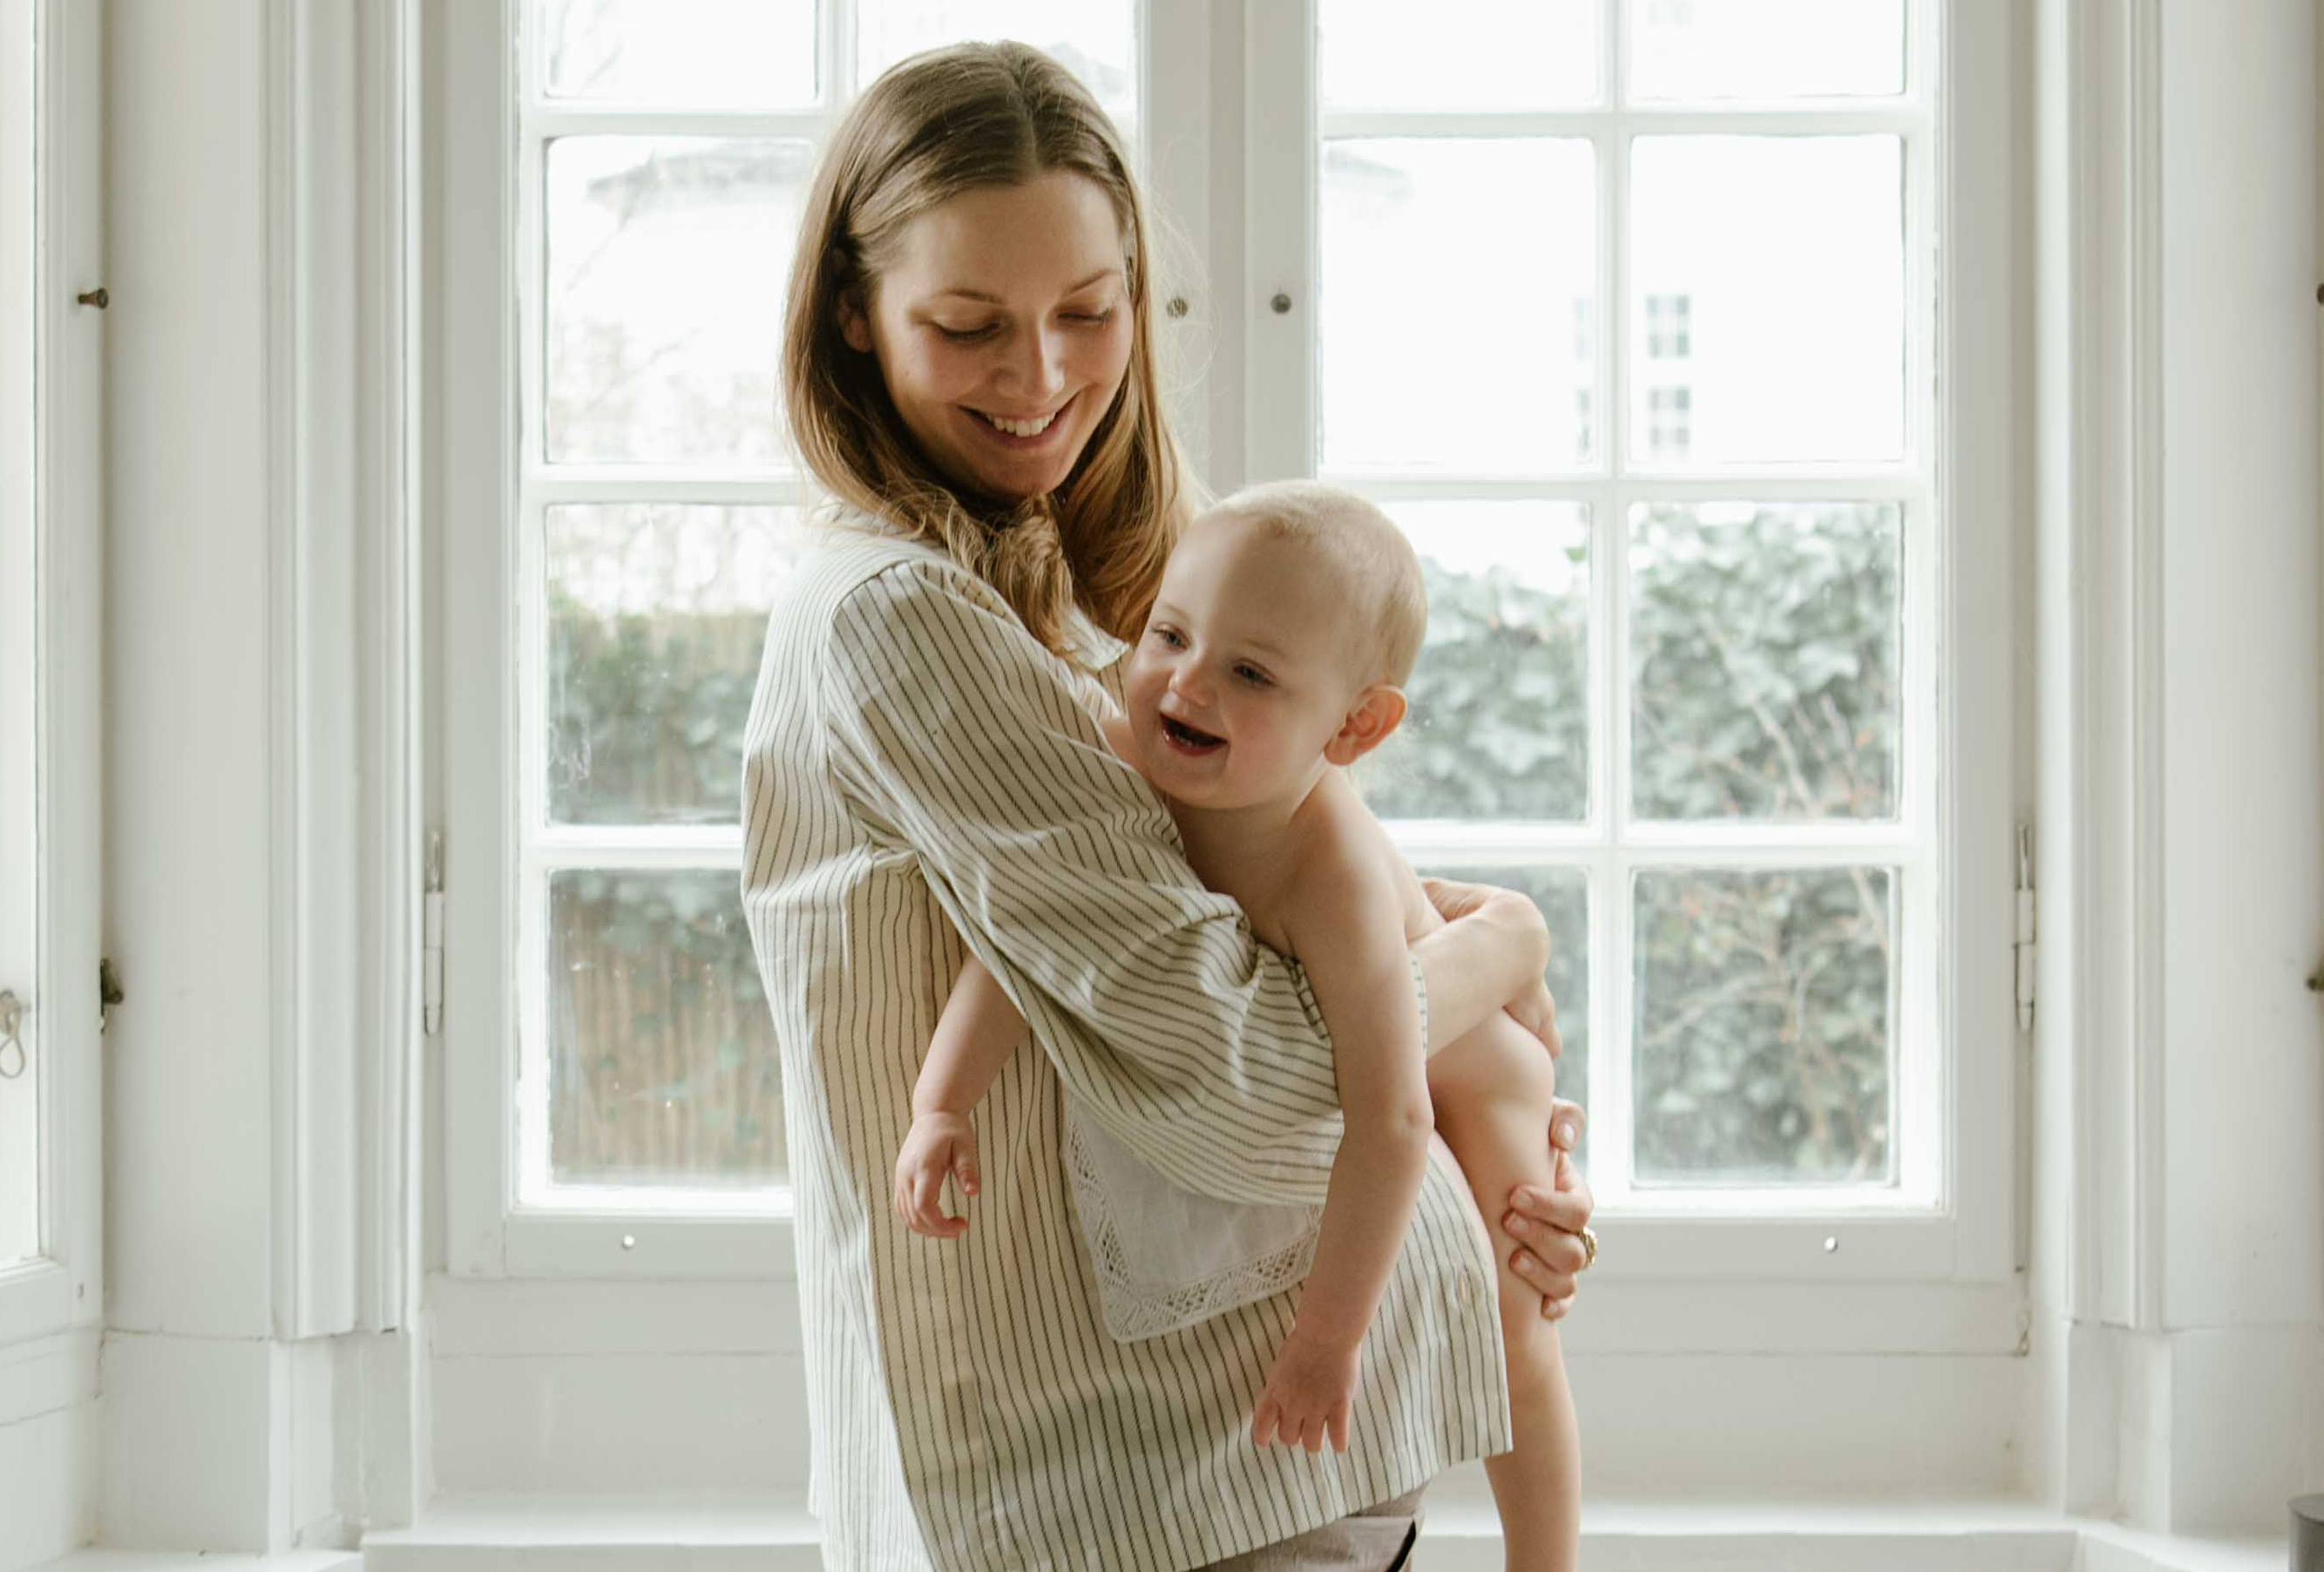 Tine Emilie Svendsen: "Min krop og mit sind var chok over at være gravid" - TO THE MOON, HONEY